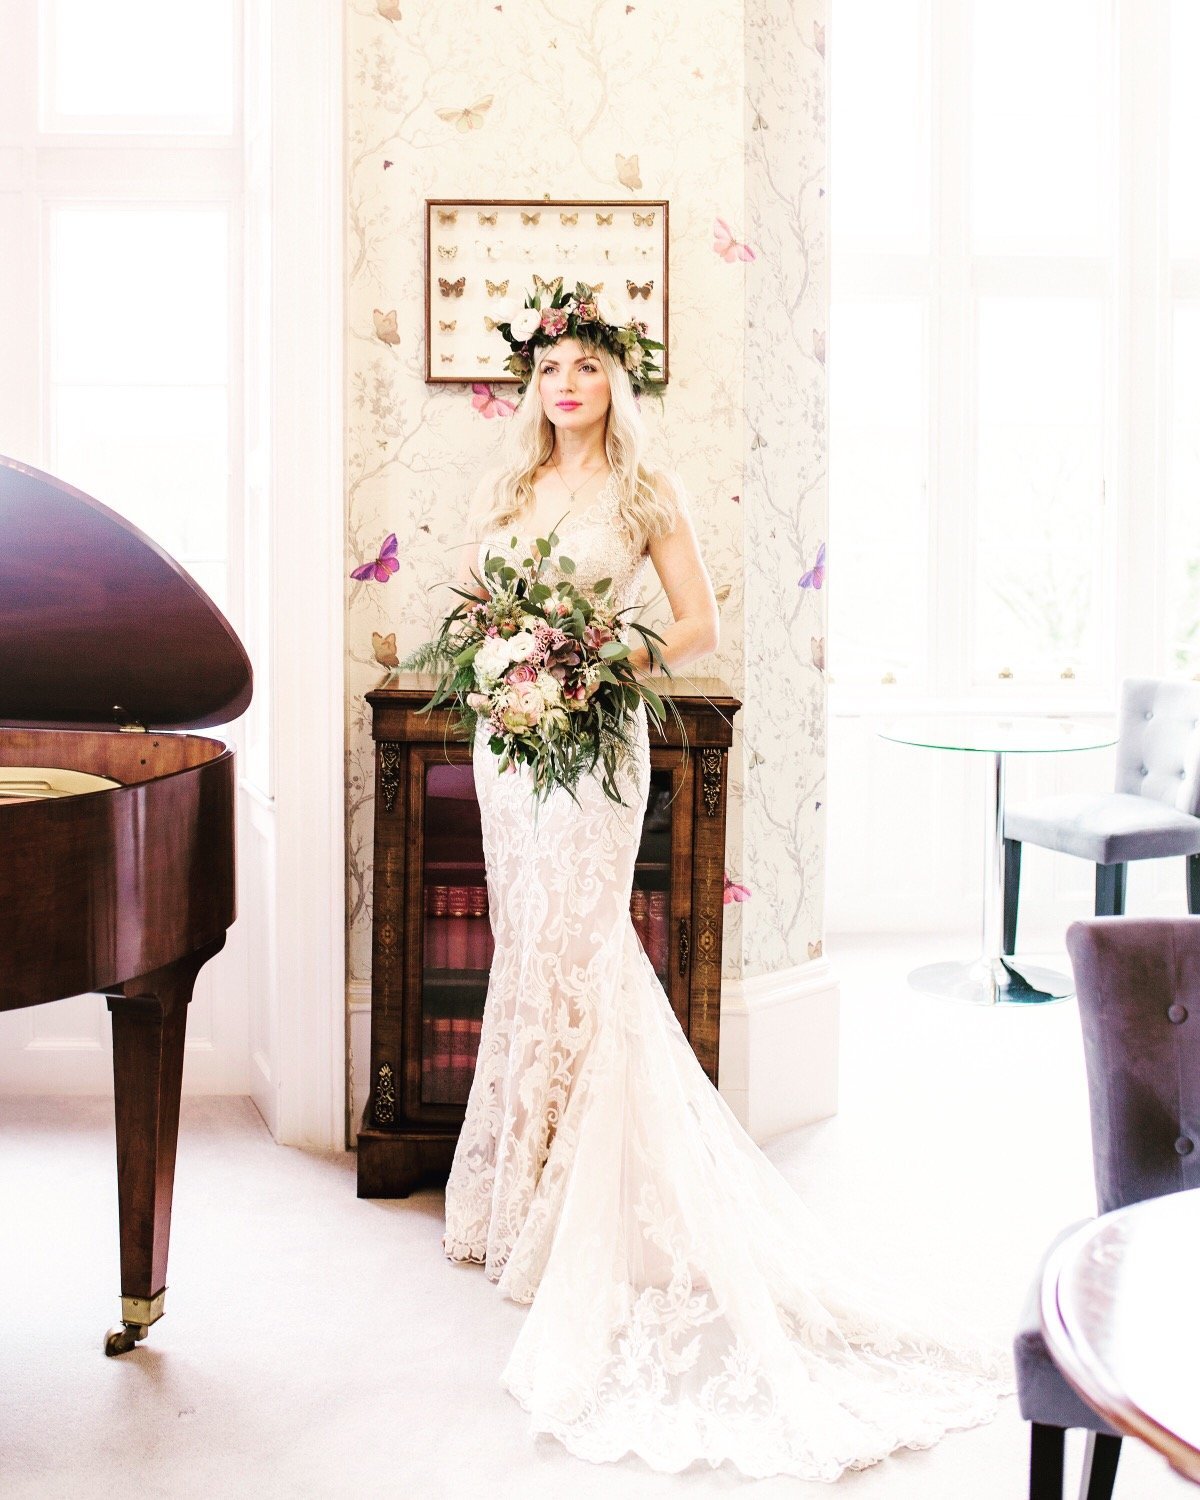 From_The_Wild_Florist_Devon_wedding_floristFrom_The_Wild_Florist_Devon_wedding_florist